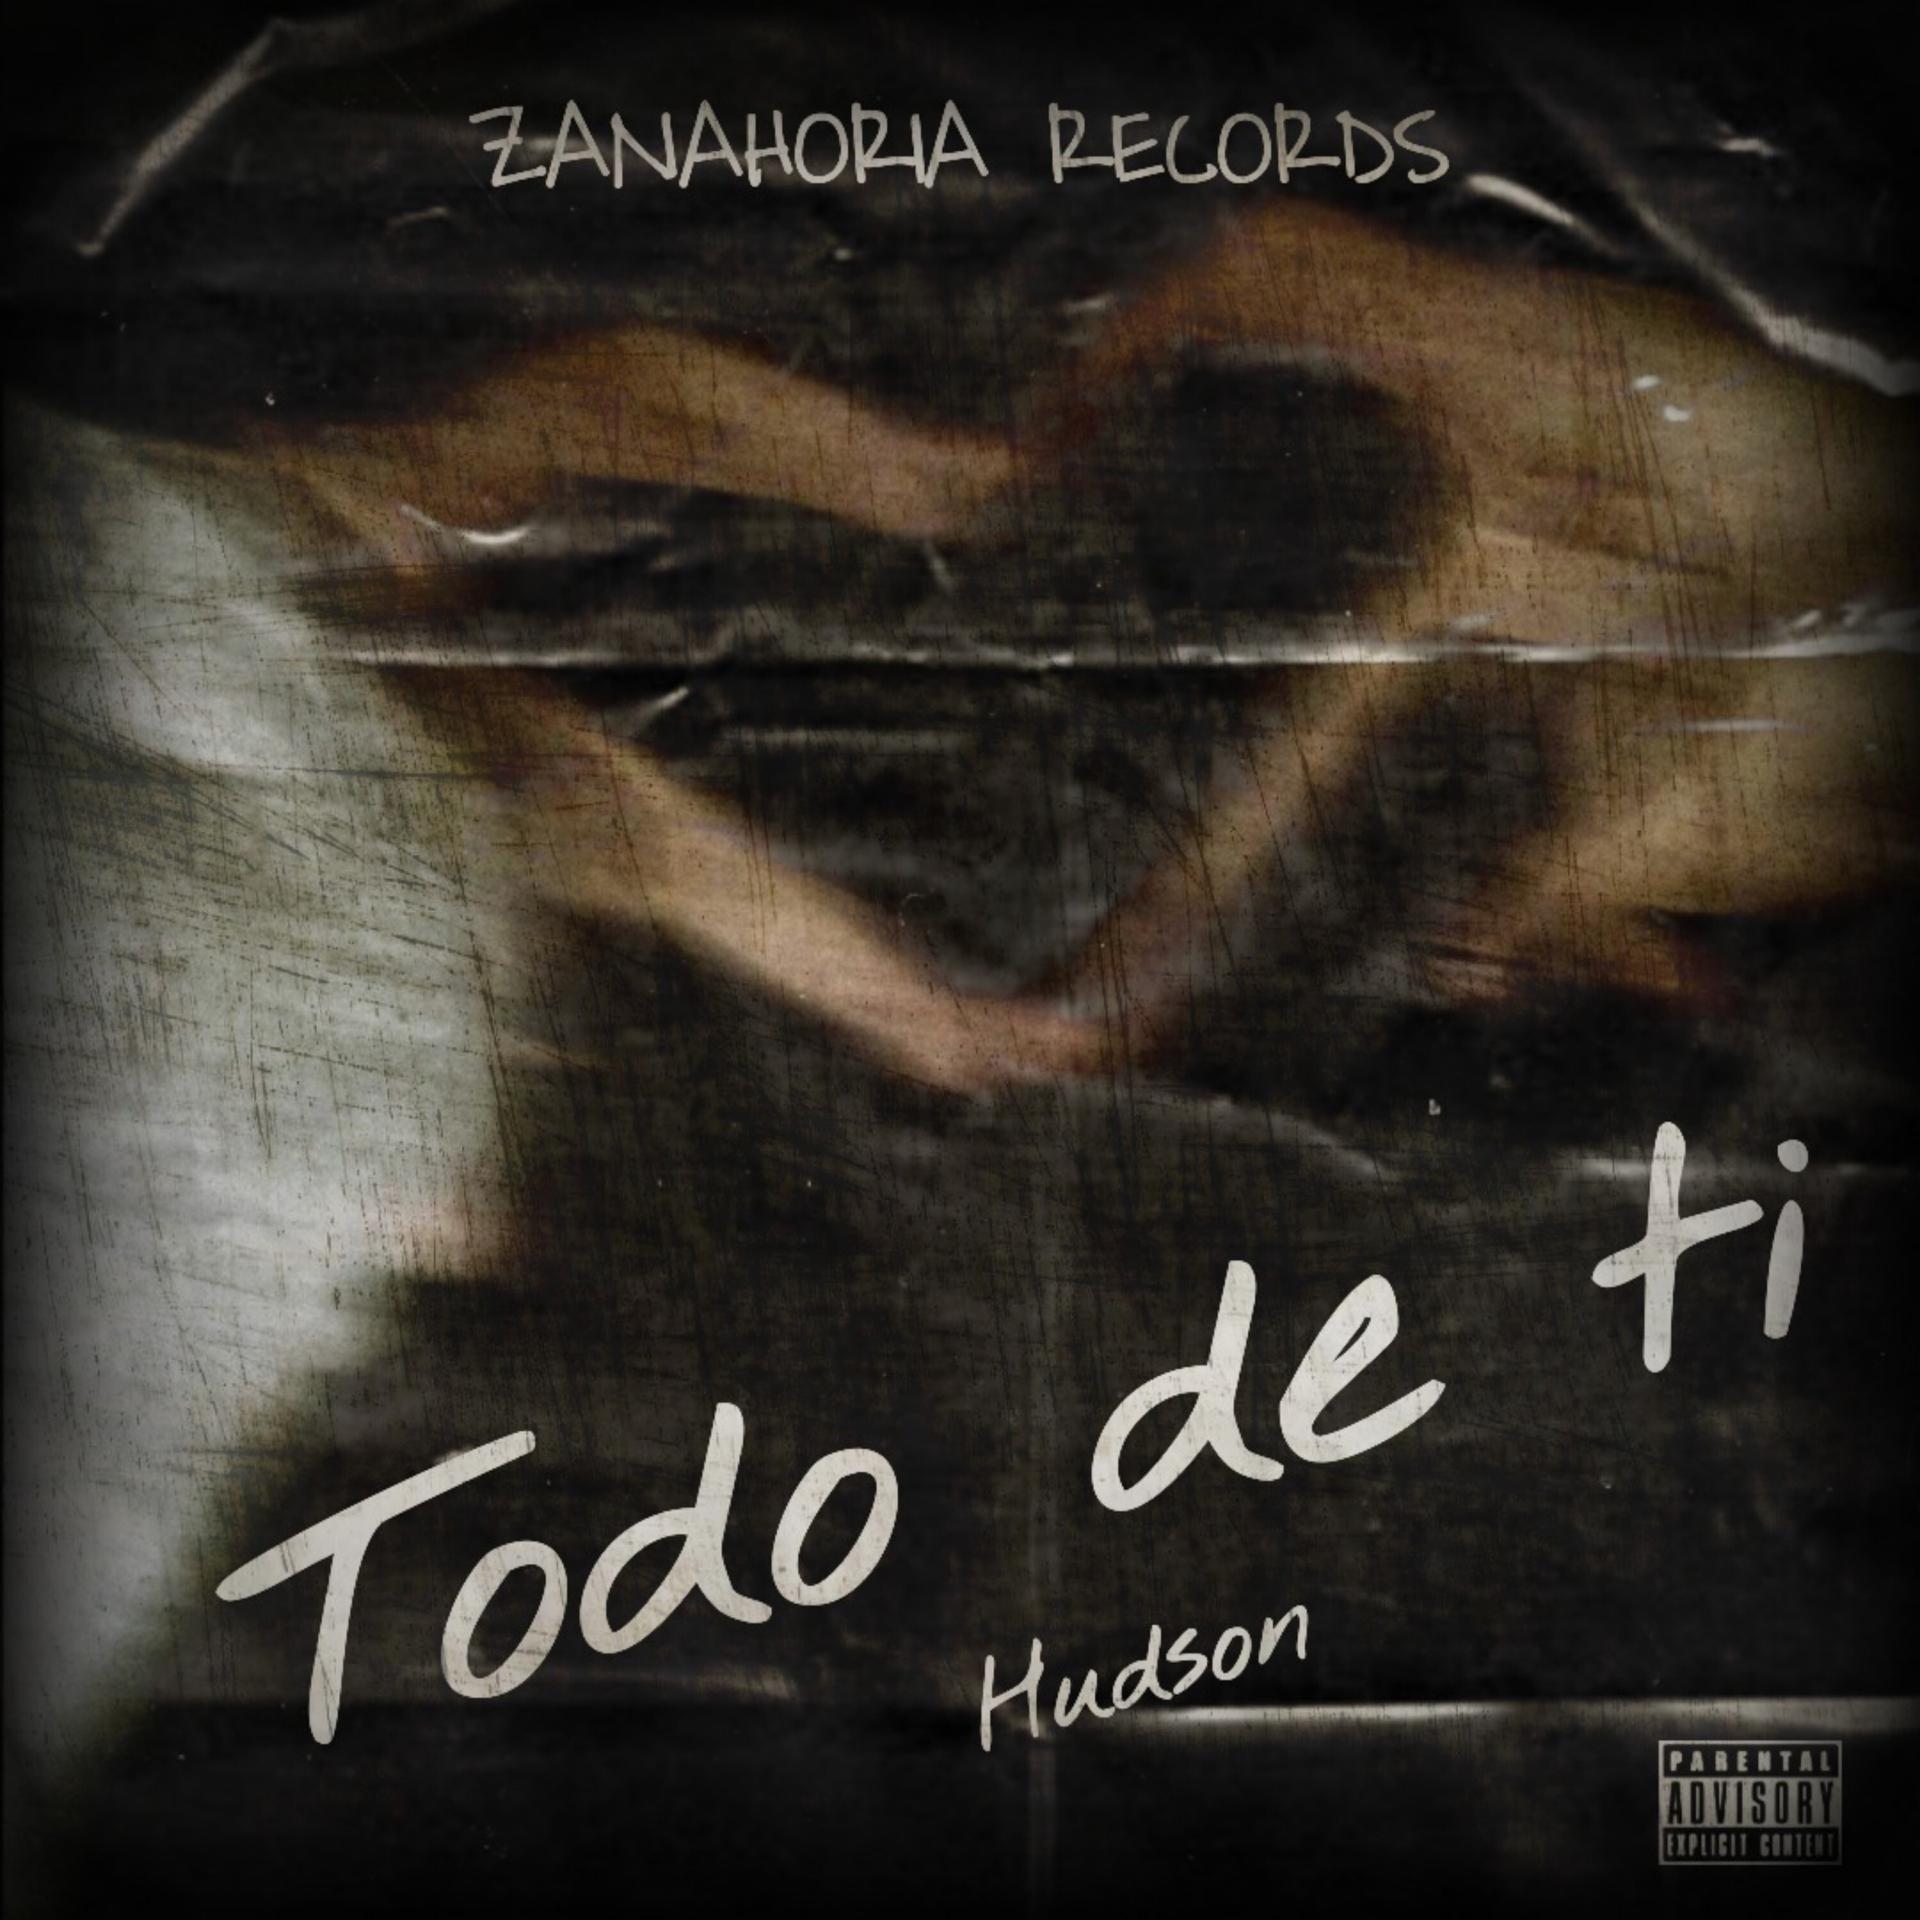 Постер альбома Todo de Ti